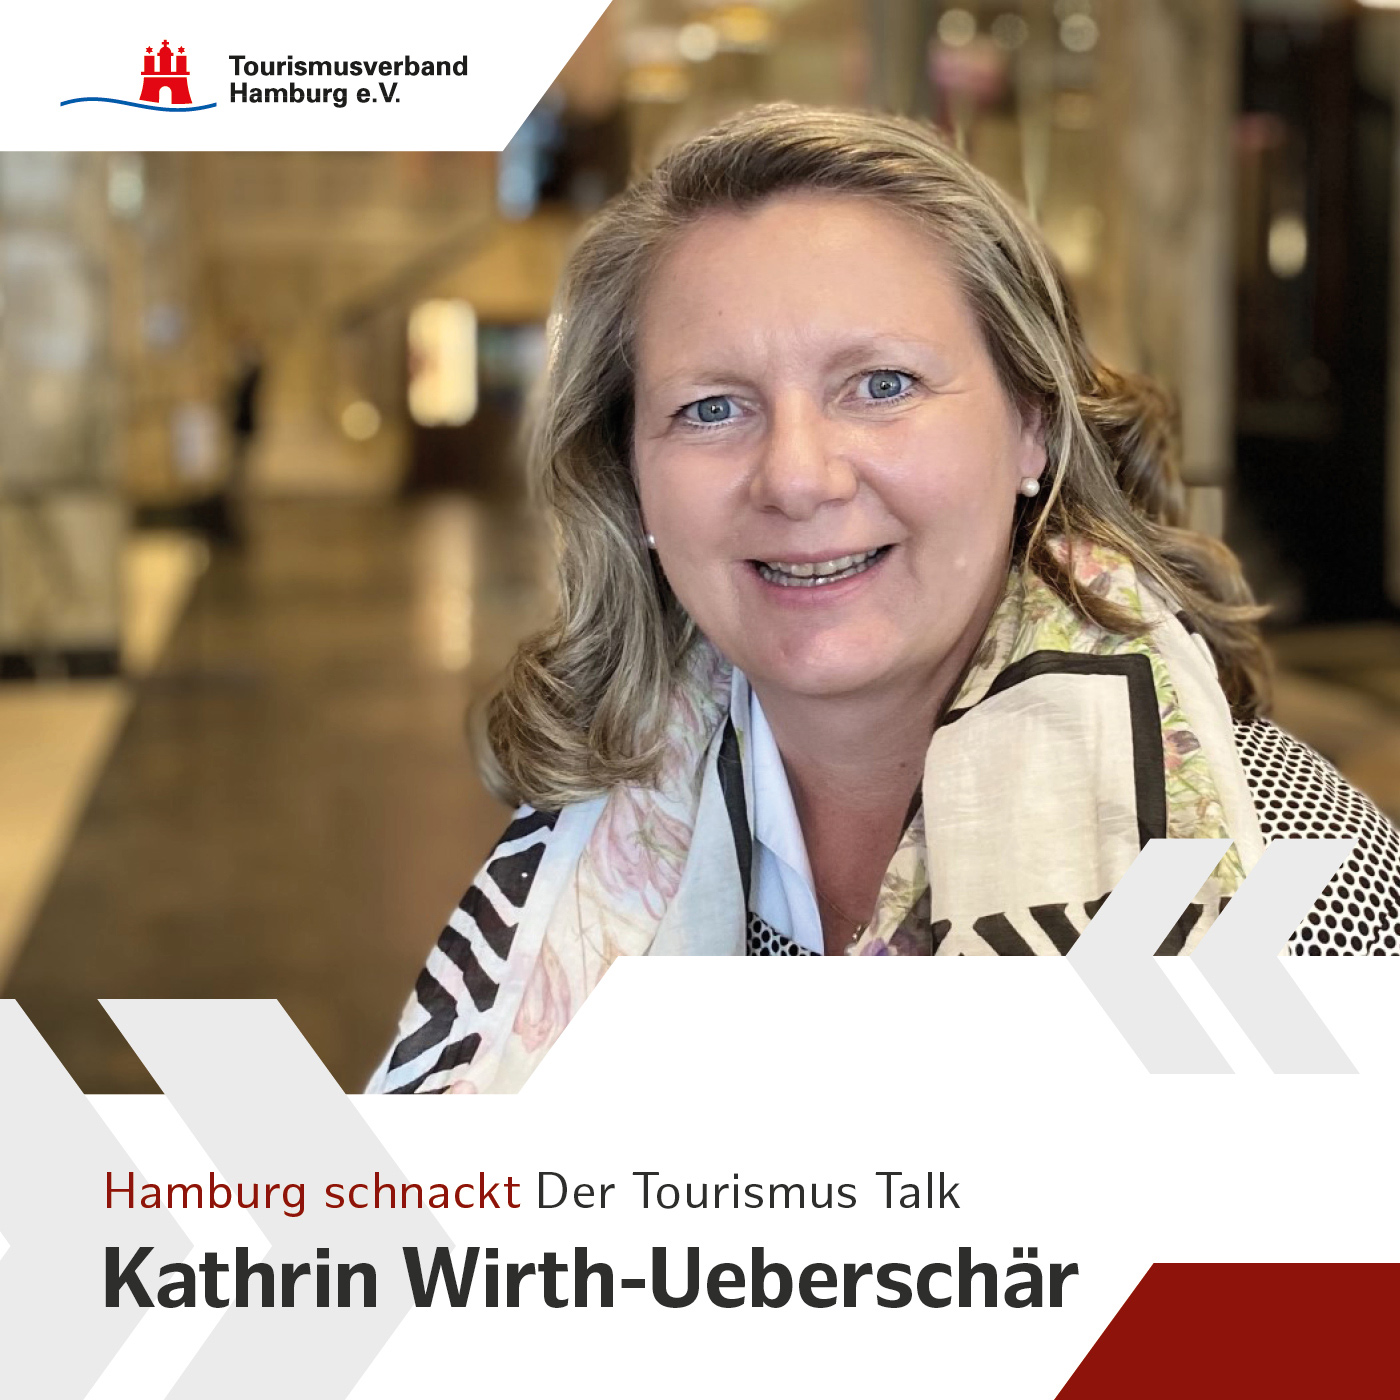 Hamburg schnackt mit Kathrin Wirth-Ueberschär